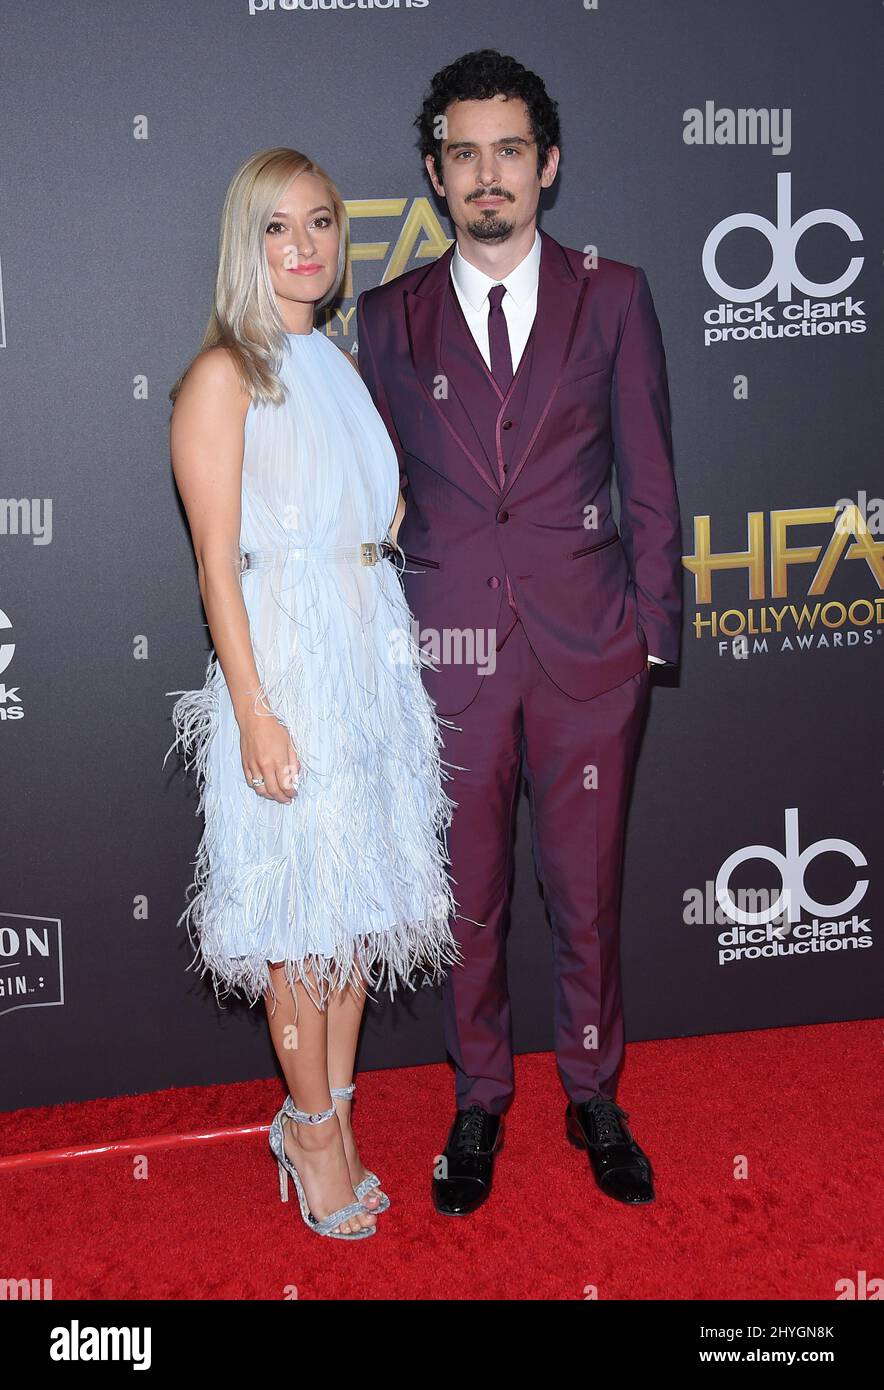 Damien Chazelle et Olivia Hamilton à l'occasion des Hollywood film Awards 22nd - arrivées à l'hôtel Beverly Hilton le 4 novembre 2018 à Beverly Hills, États-Unis Banque D'Images